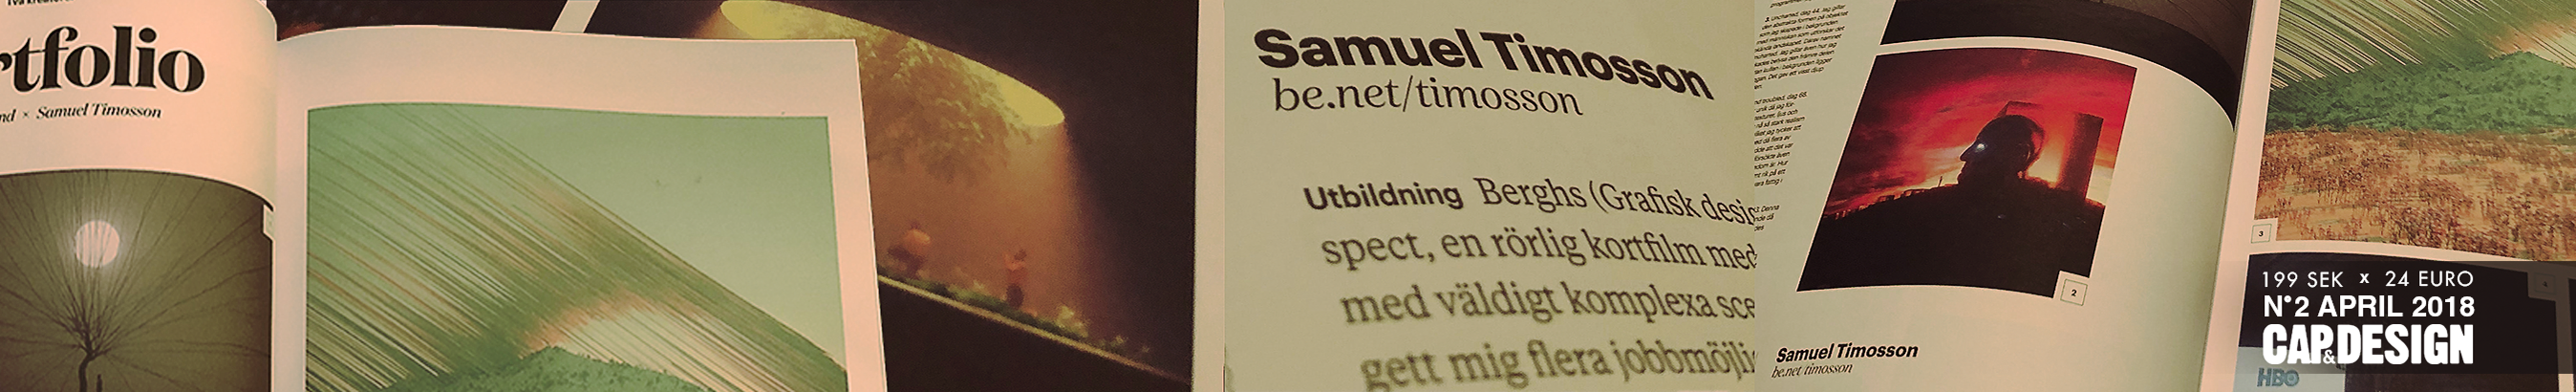 Profielbanner van Samuel Timosson